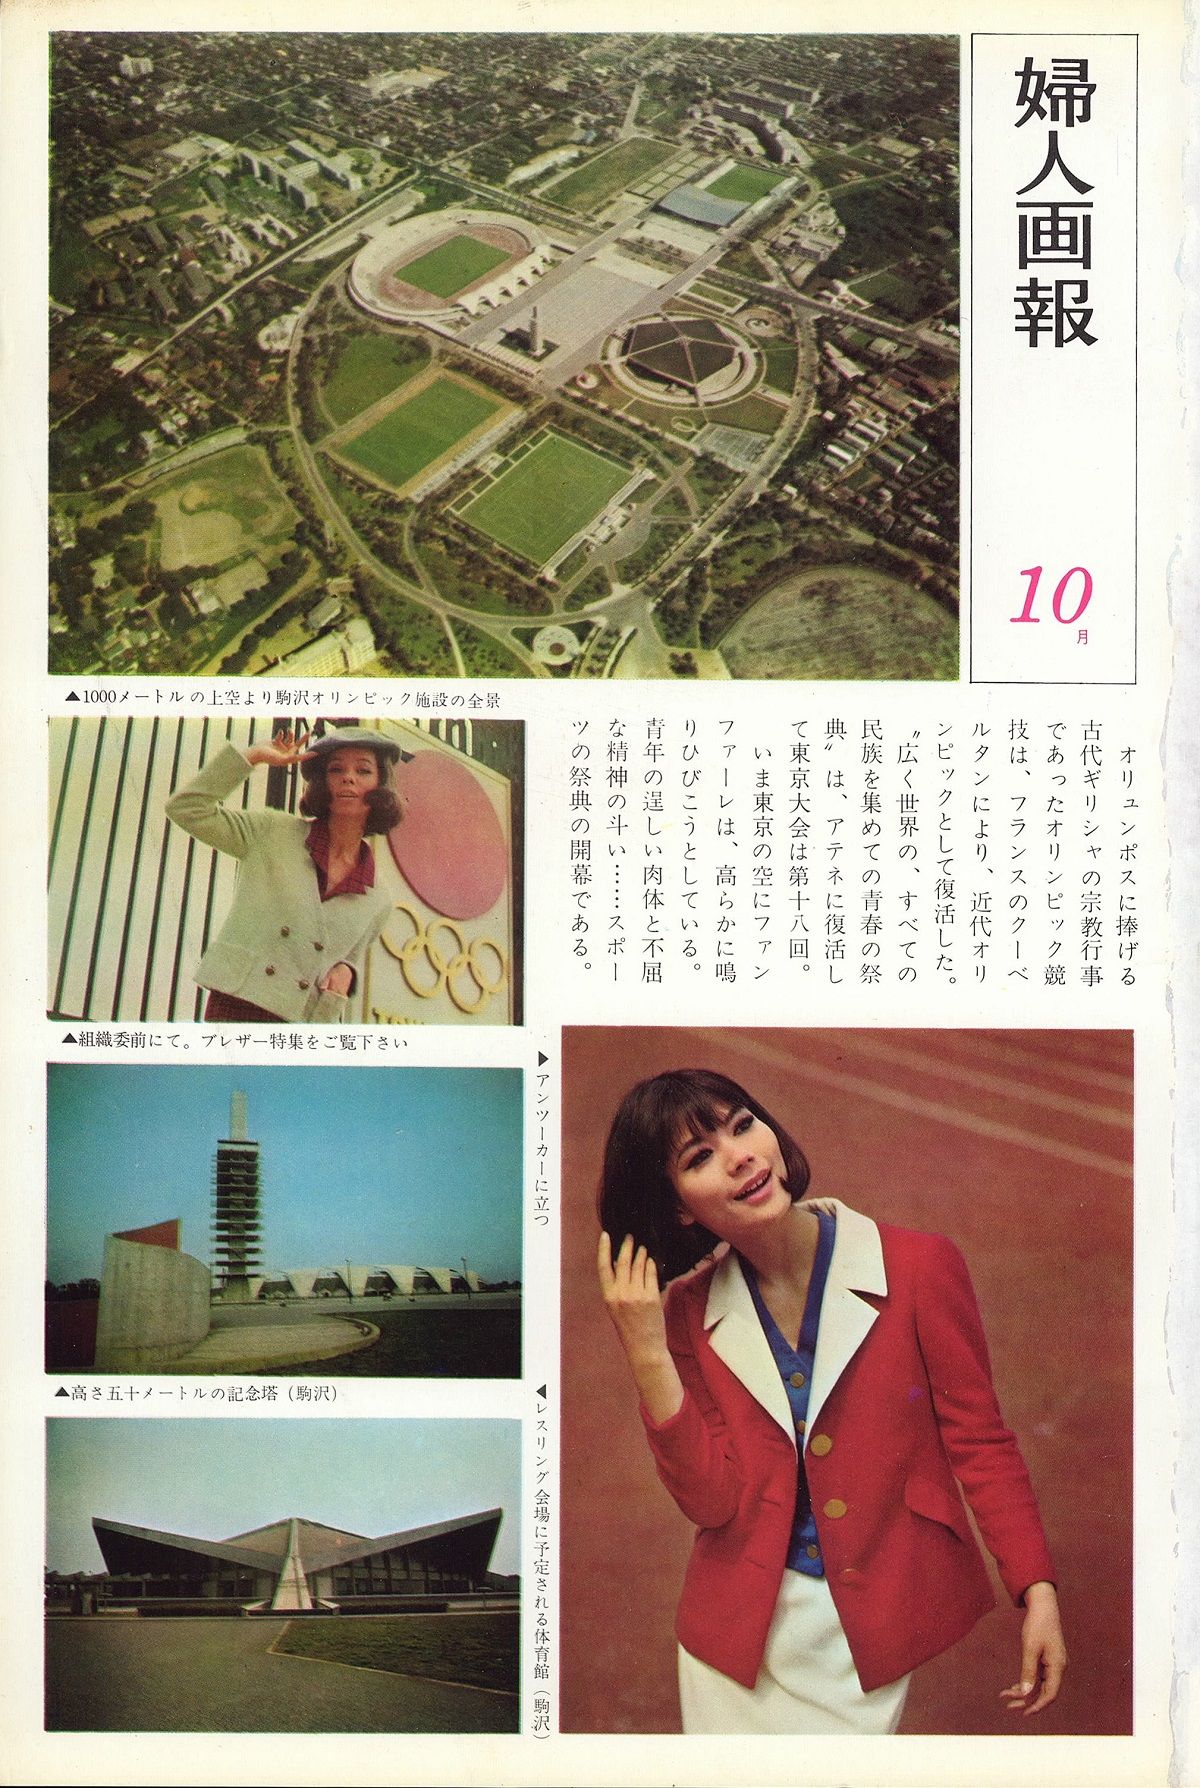 開幕直前の『婦人画報』1964年10月号が伝えた、東京五輪の様子とは……。